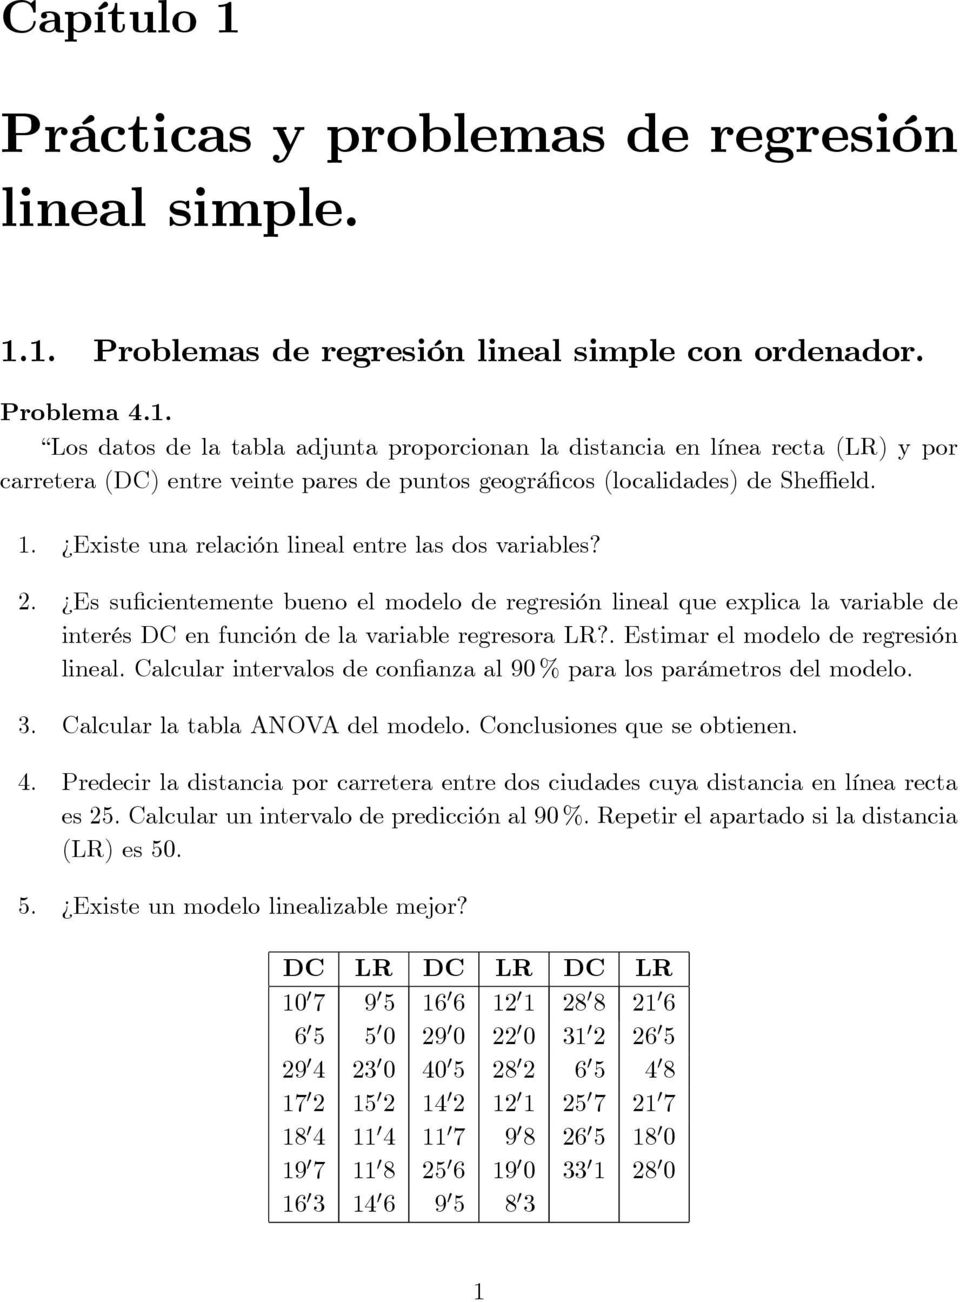 Prácticas y problemas de regresión lineal simple. - PDF Free Download